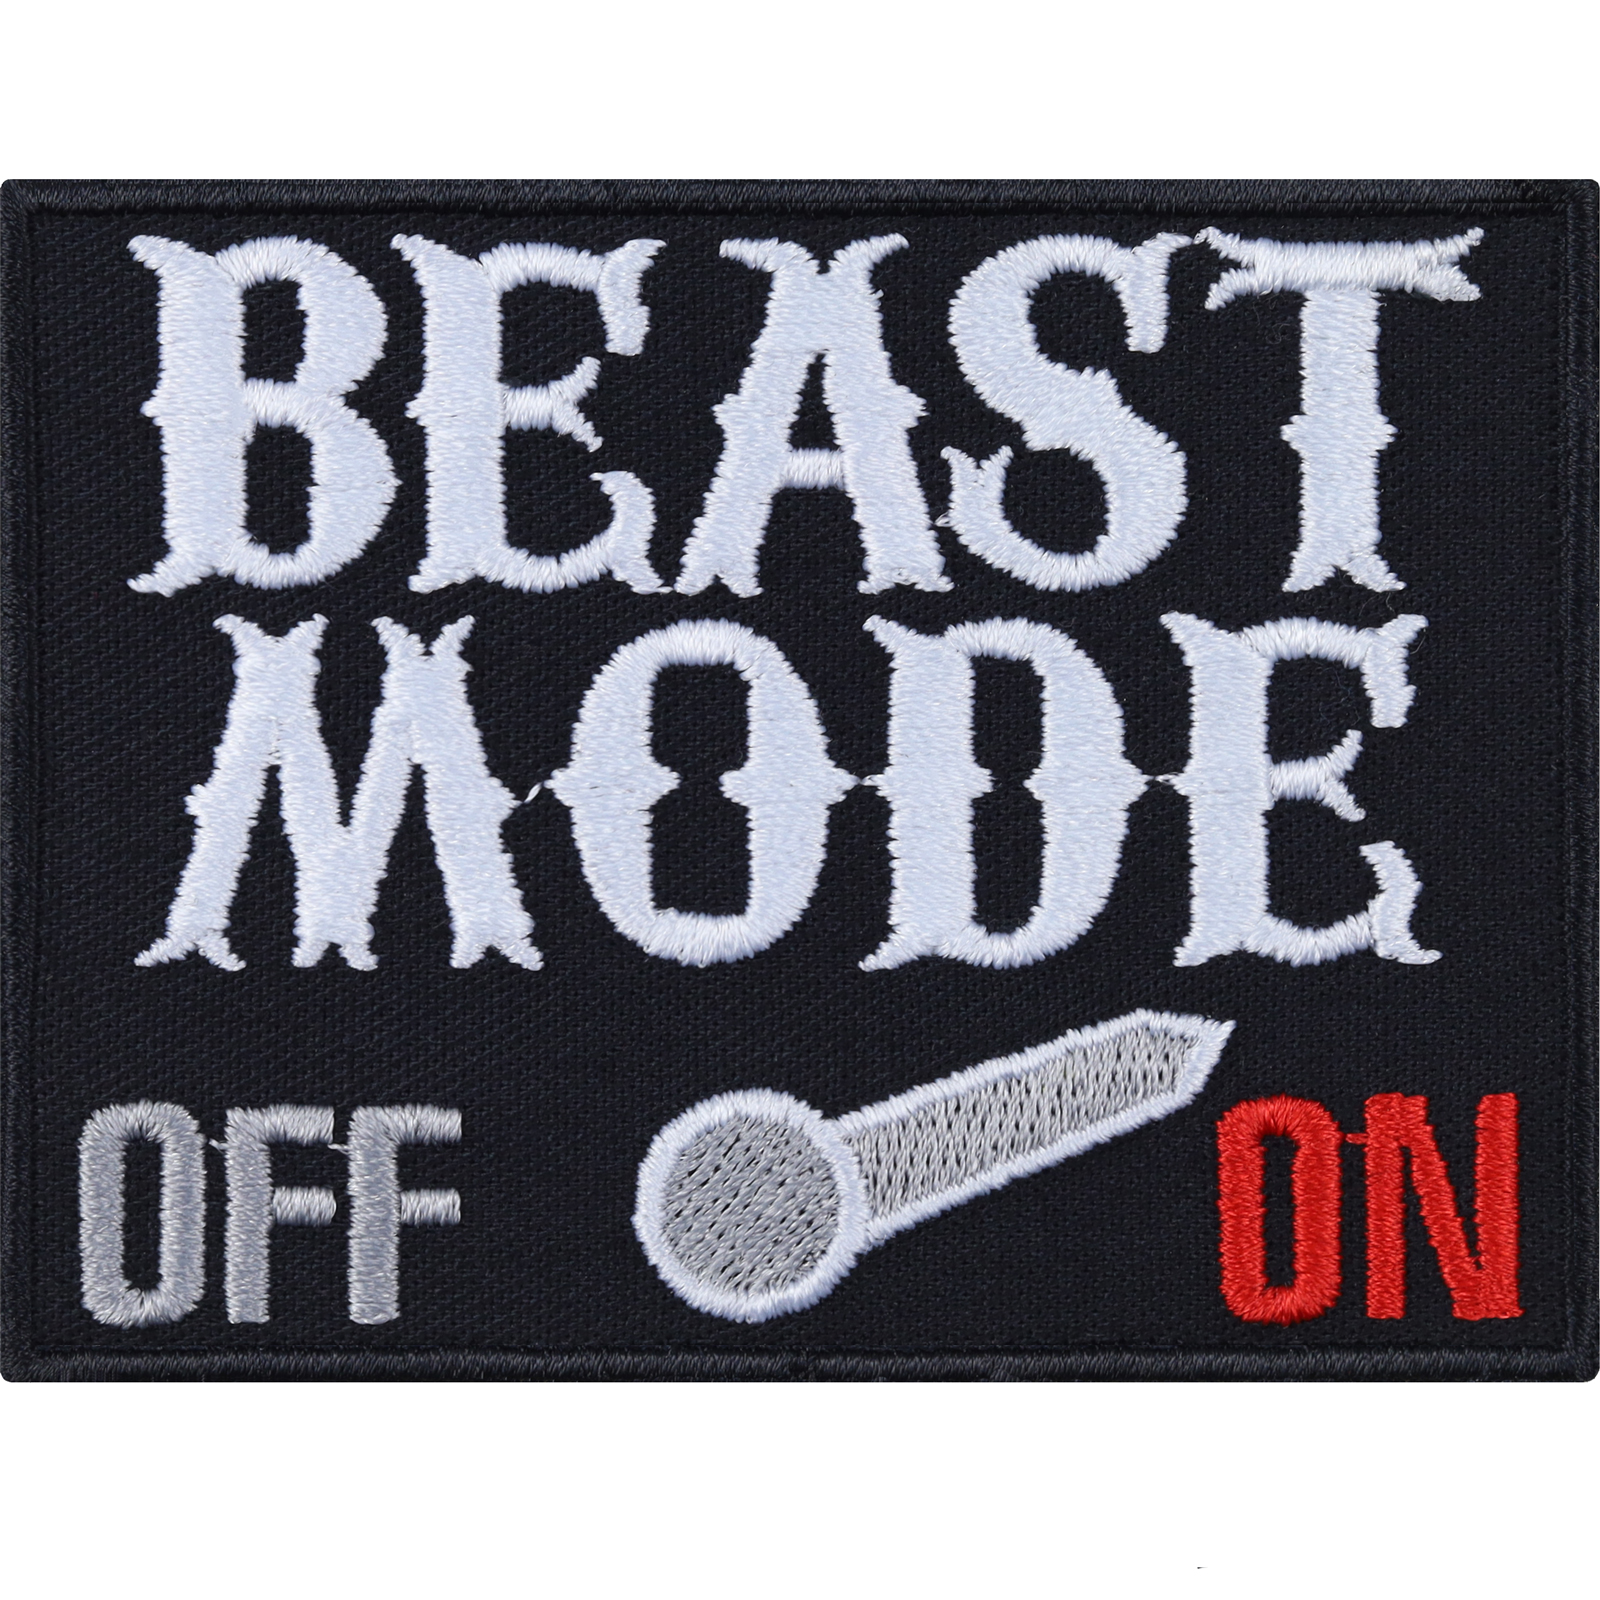 Aufnäher: Beast Mode ON/OFF Metal Aufbügler/Patch/Flicken/Bügelbild 80x60mm